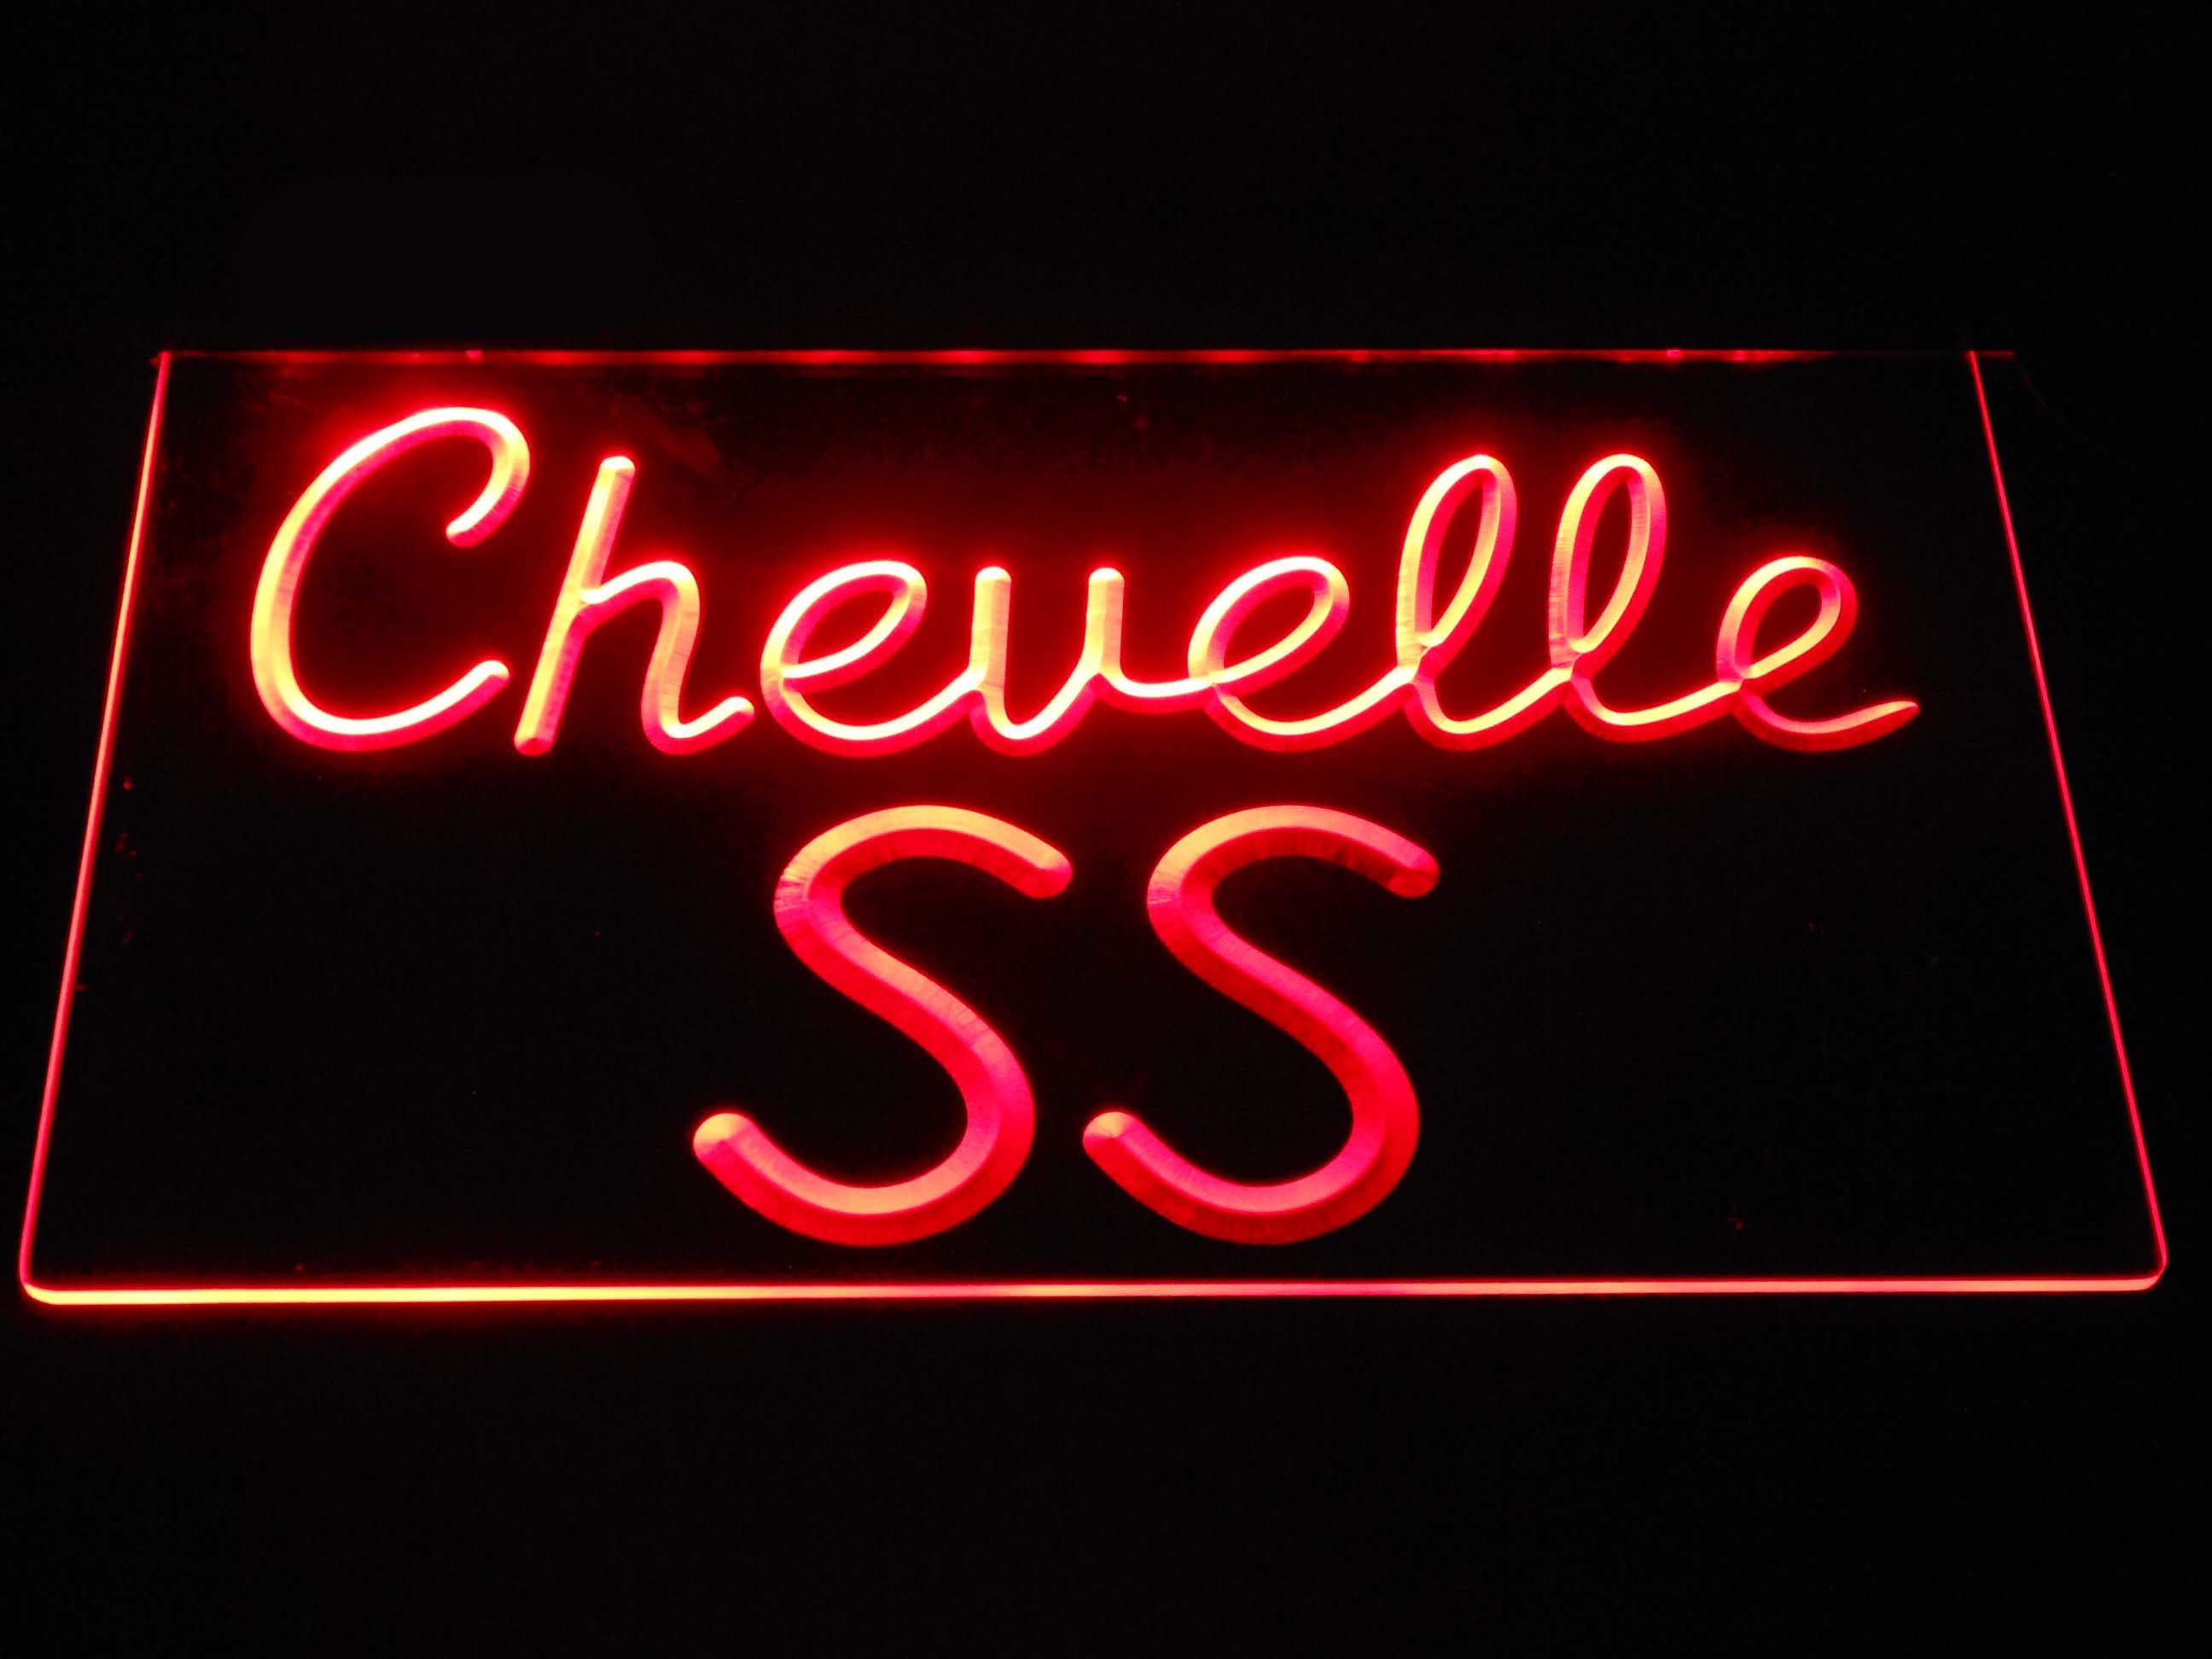 Chevrolet Chevelle SS Neon Light LED Sign